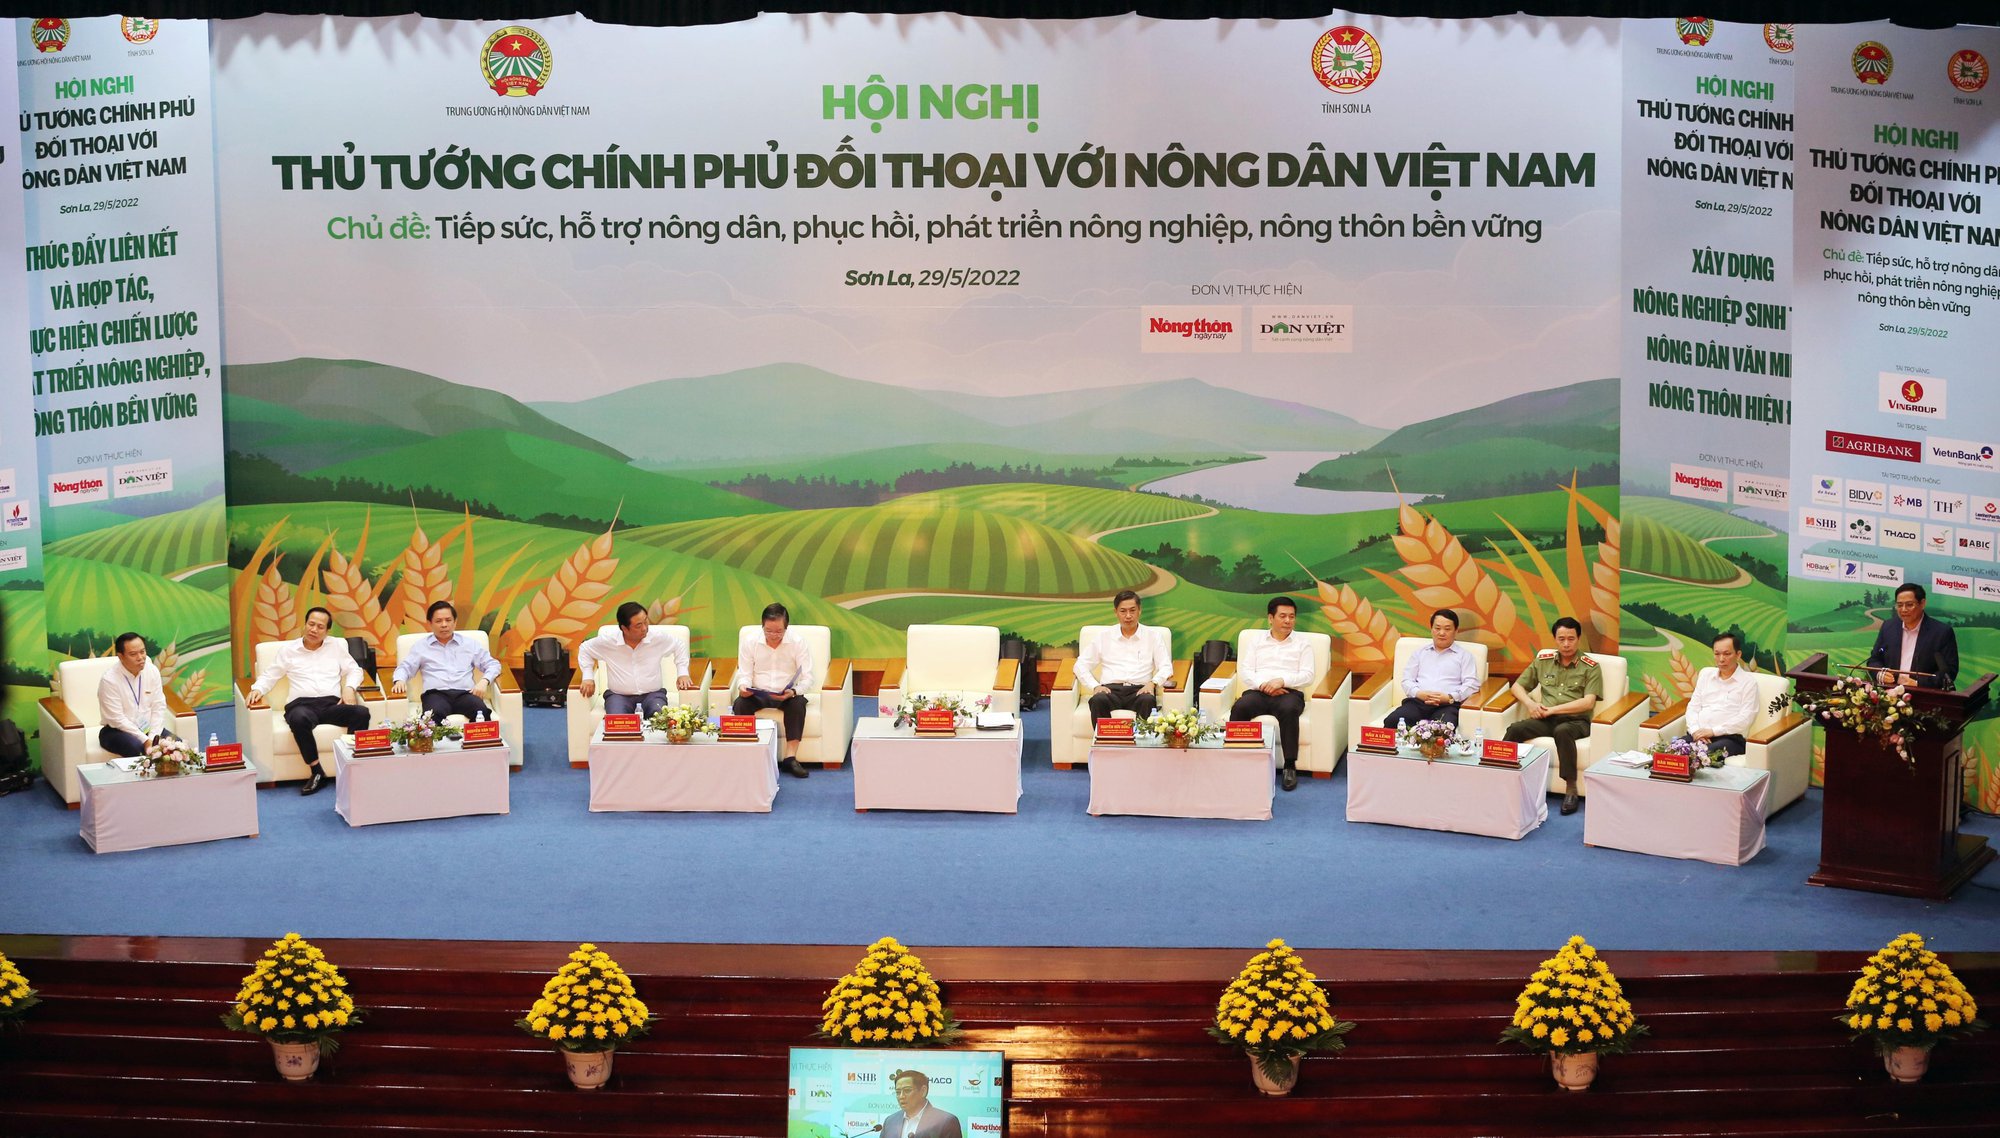 Đang kết nối trực tuyến 62 điểm cầu với Hội nghị Thủ tướng Chính phủ đối thoại với nông dân lần thứ 4 - Ảnh 2.